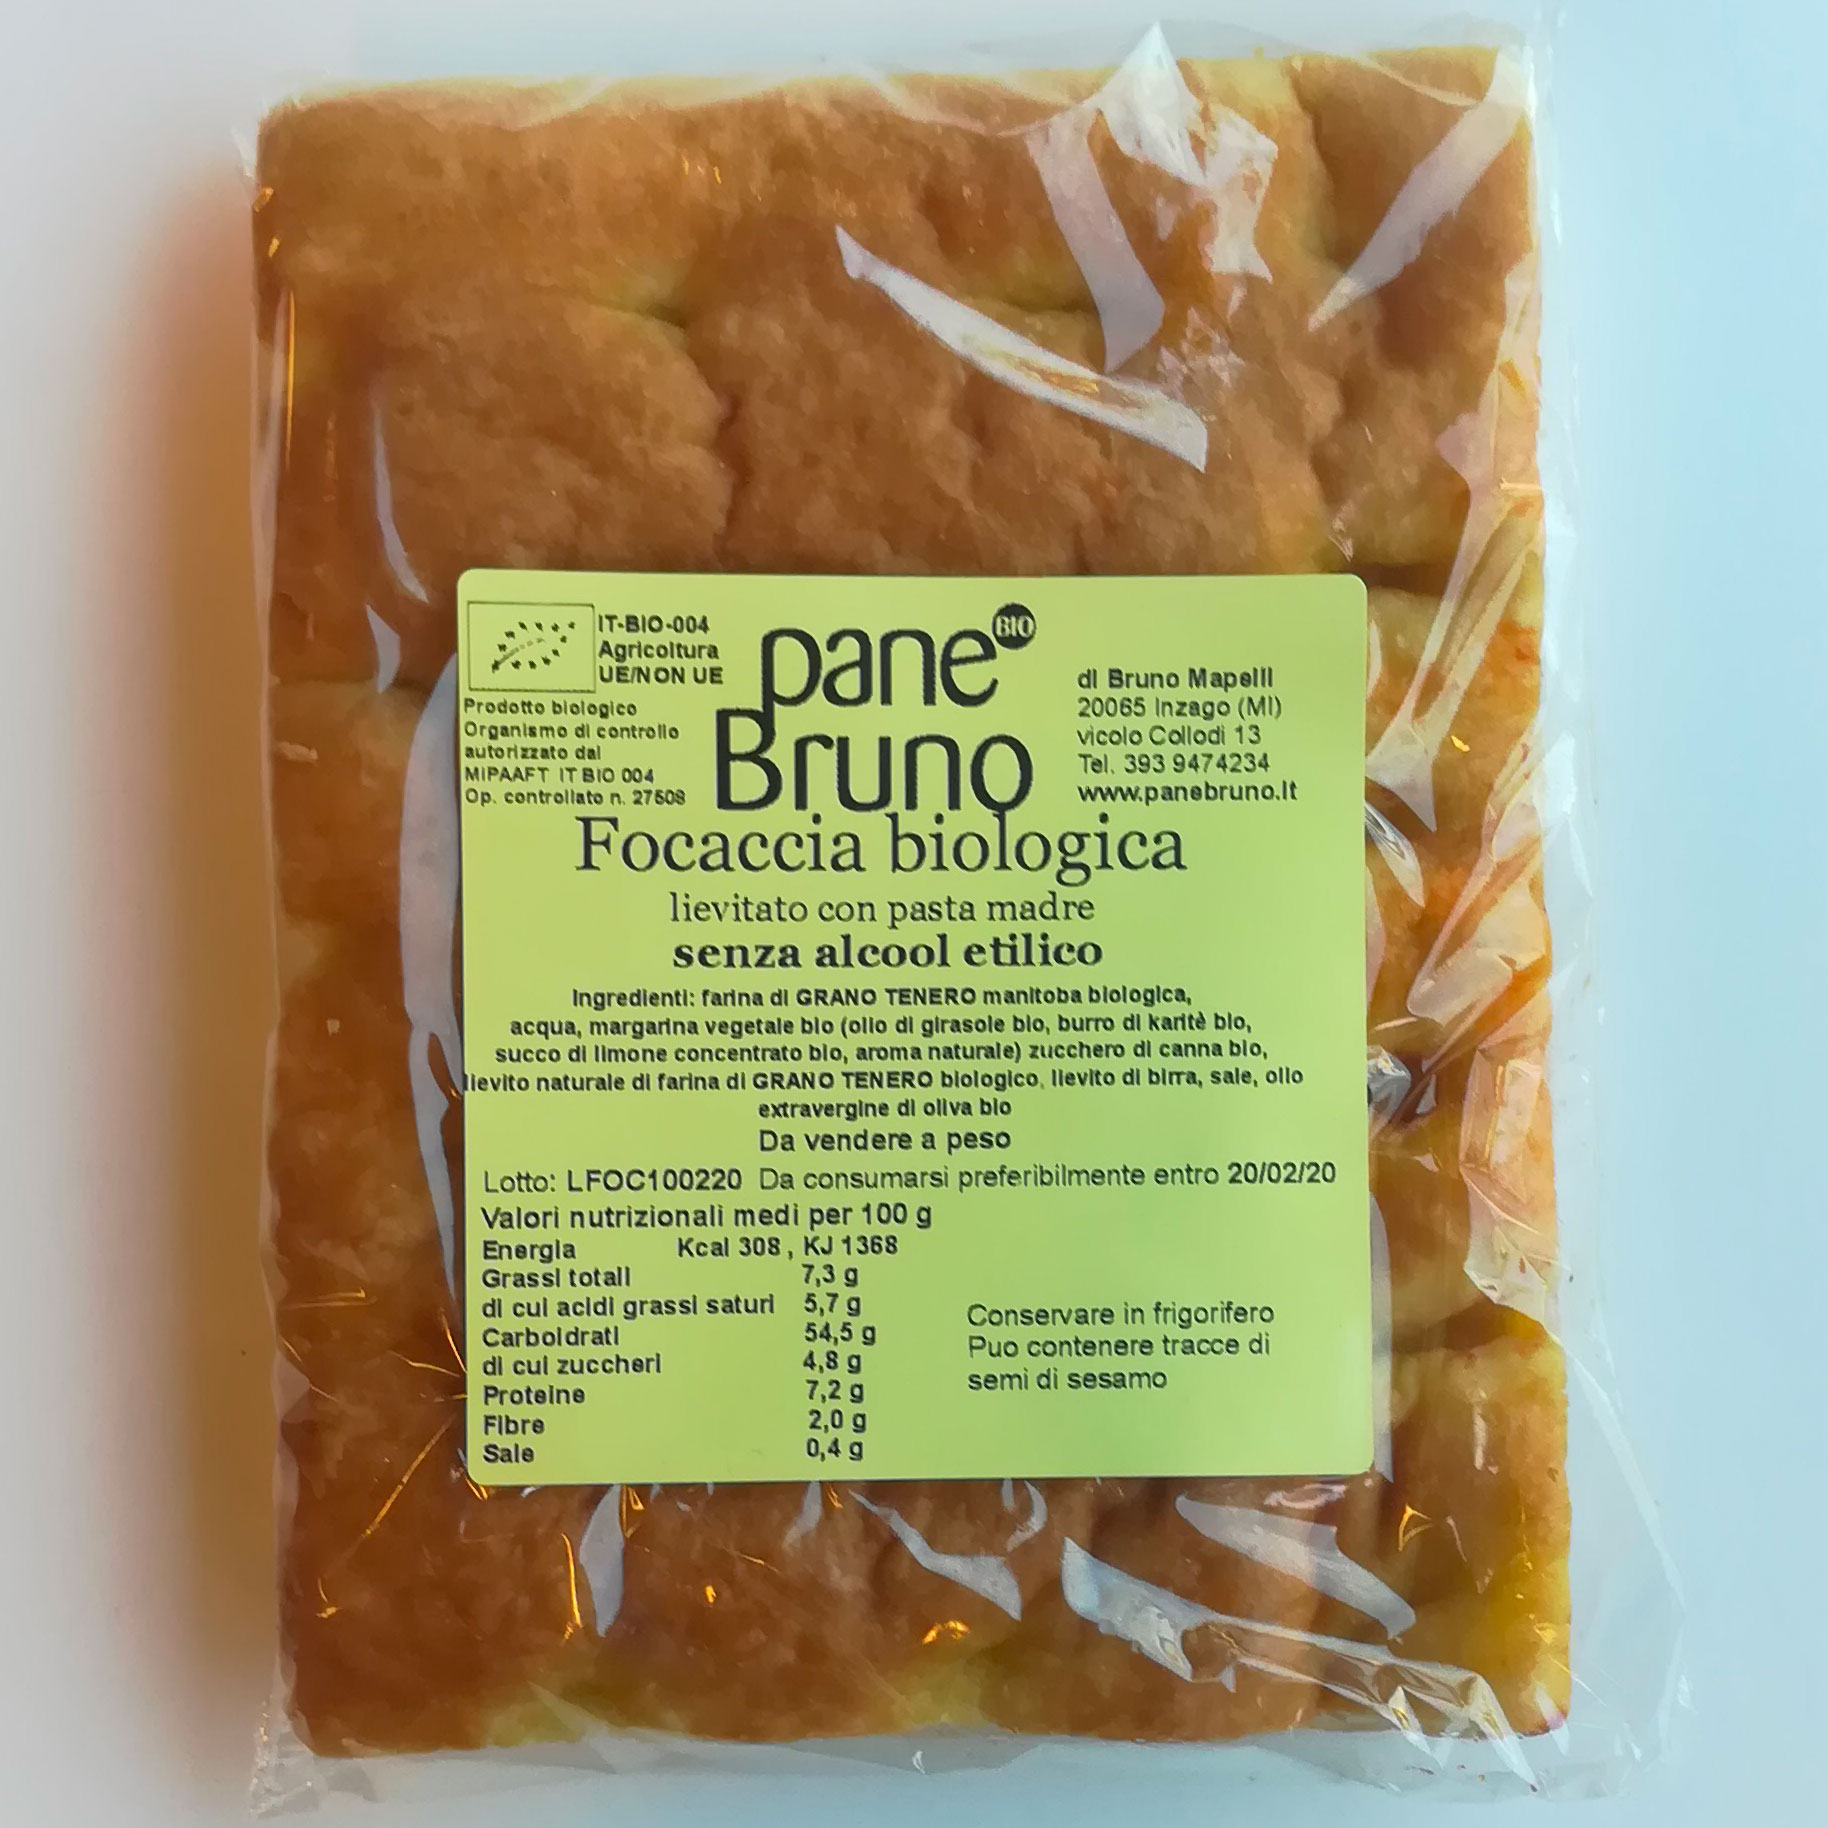 Focaccia biologica - lievitata con pasta madre -  150 g